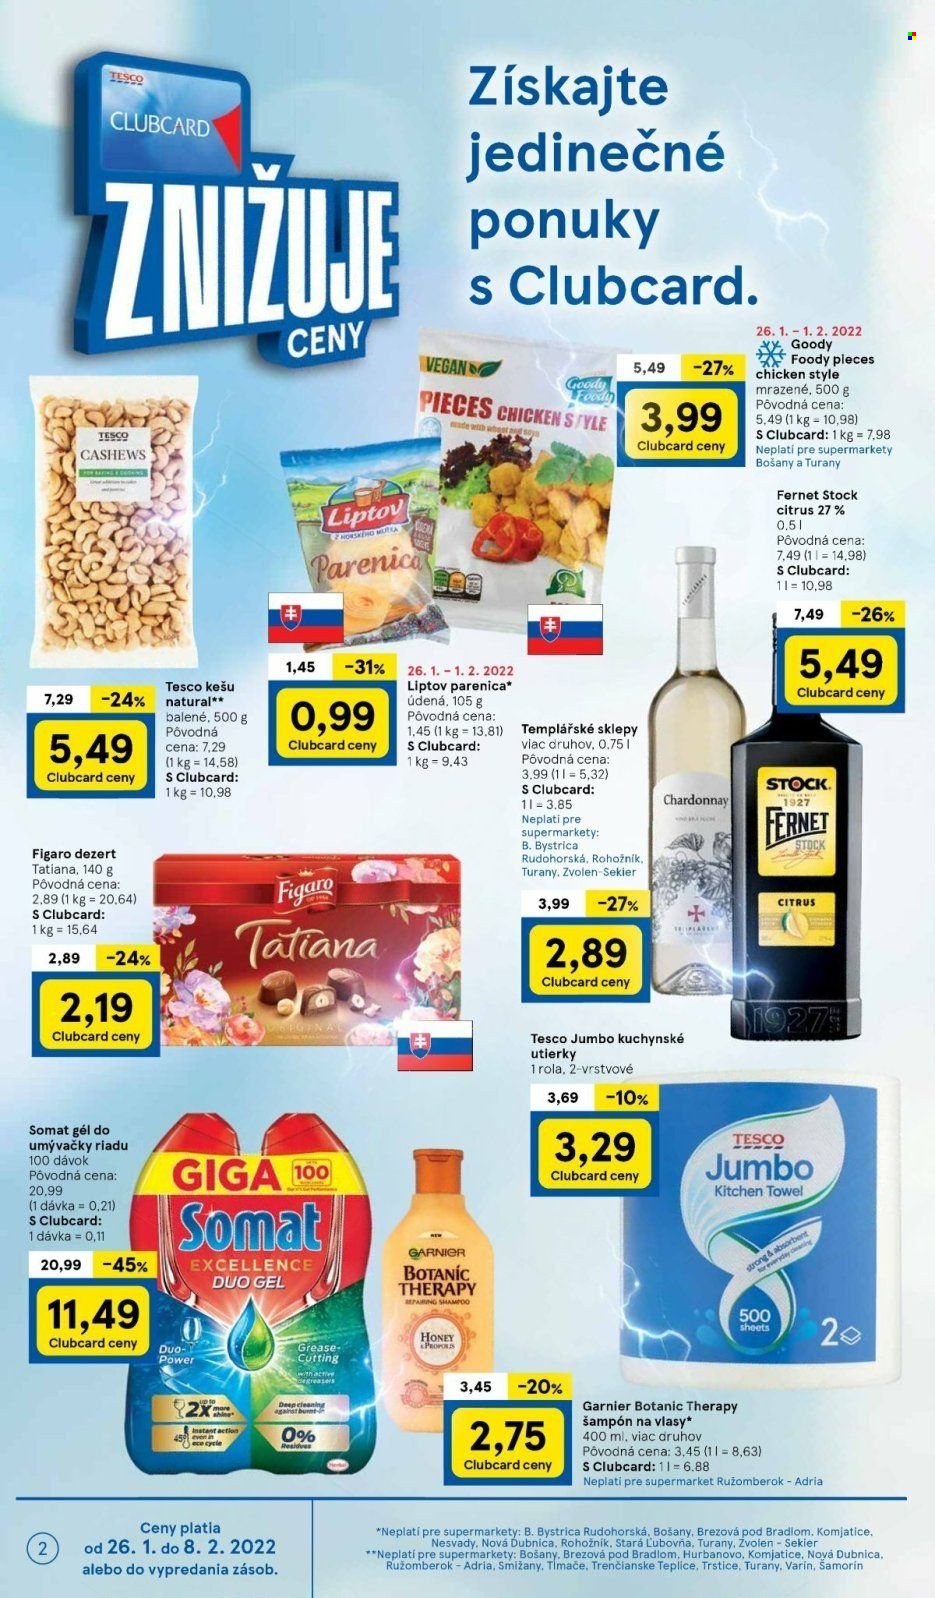 Leták TESCO supermarket - 26.1.2022 - 1.2.2022.